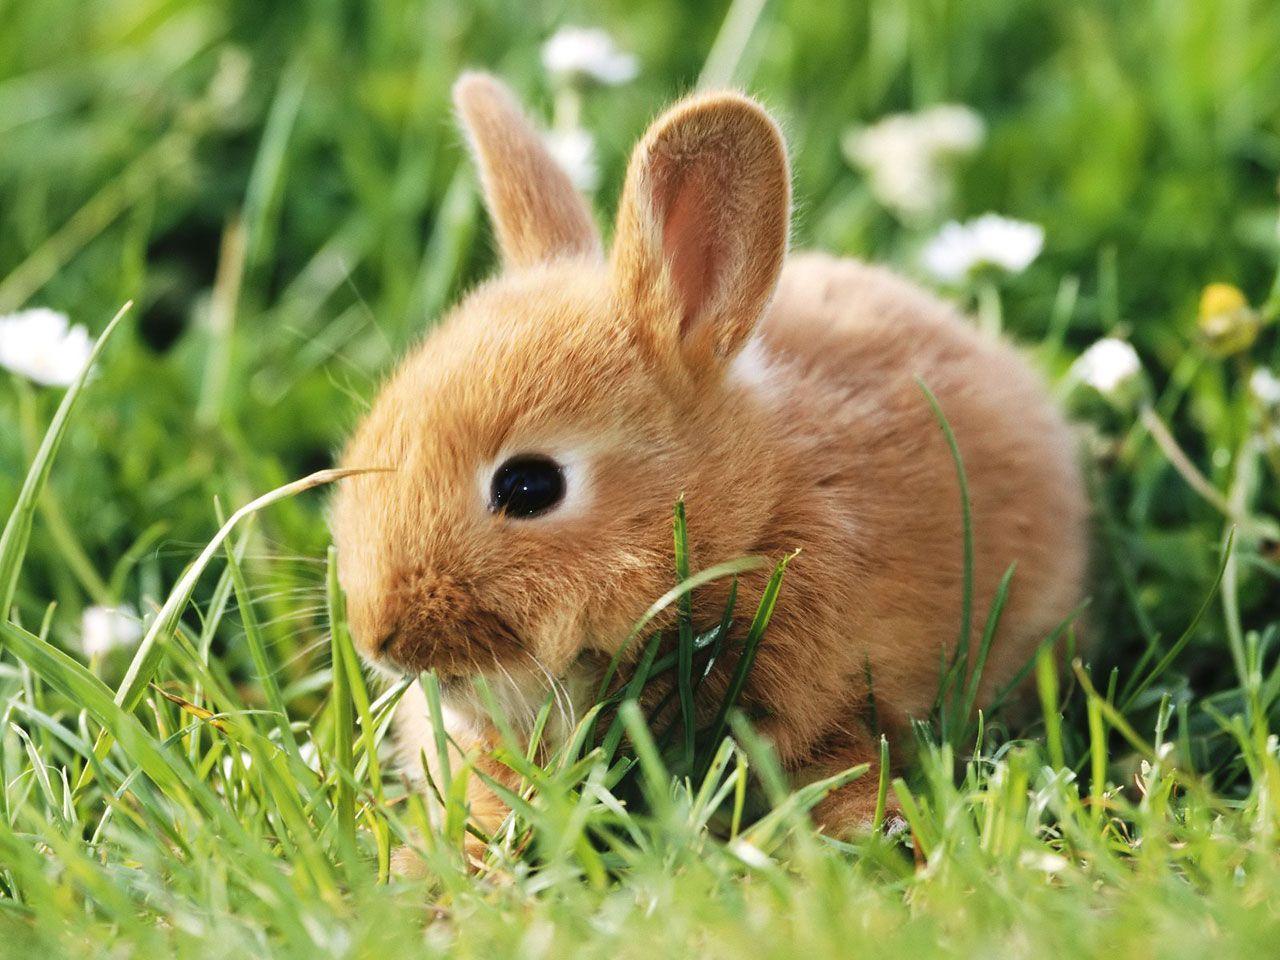 Cute Baby Bunnies on Green Grass